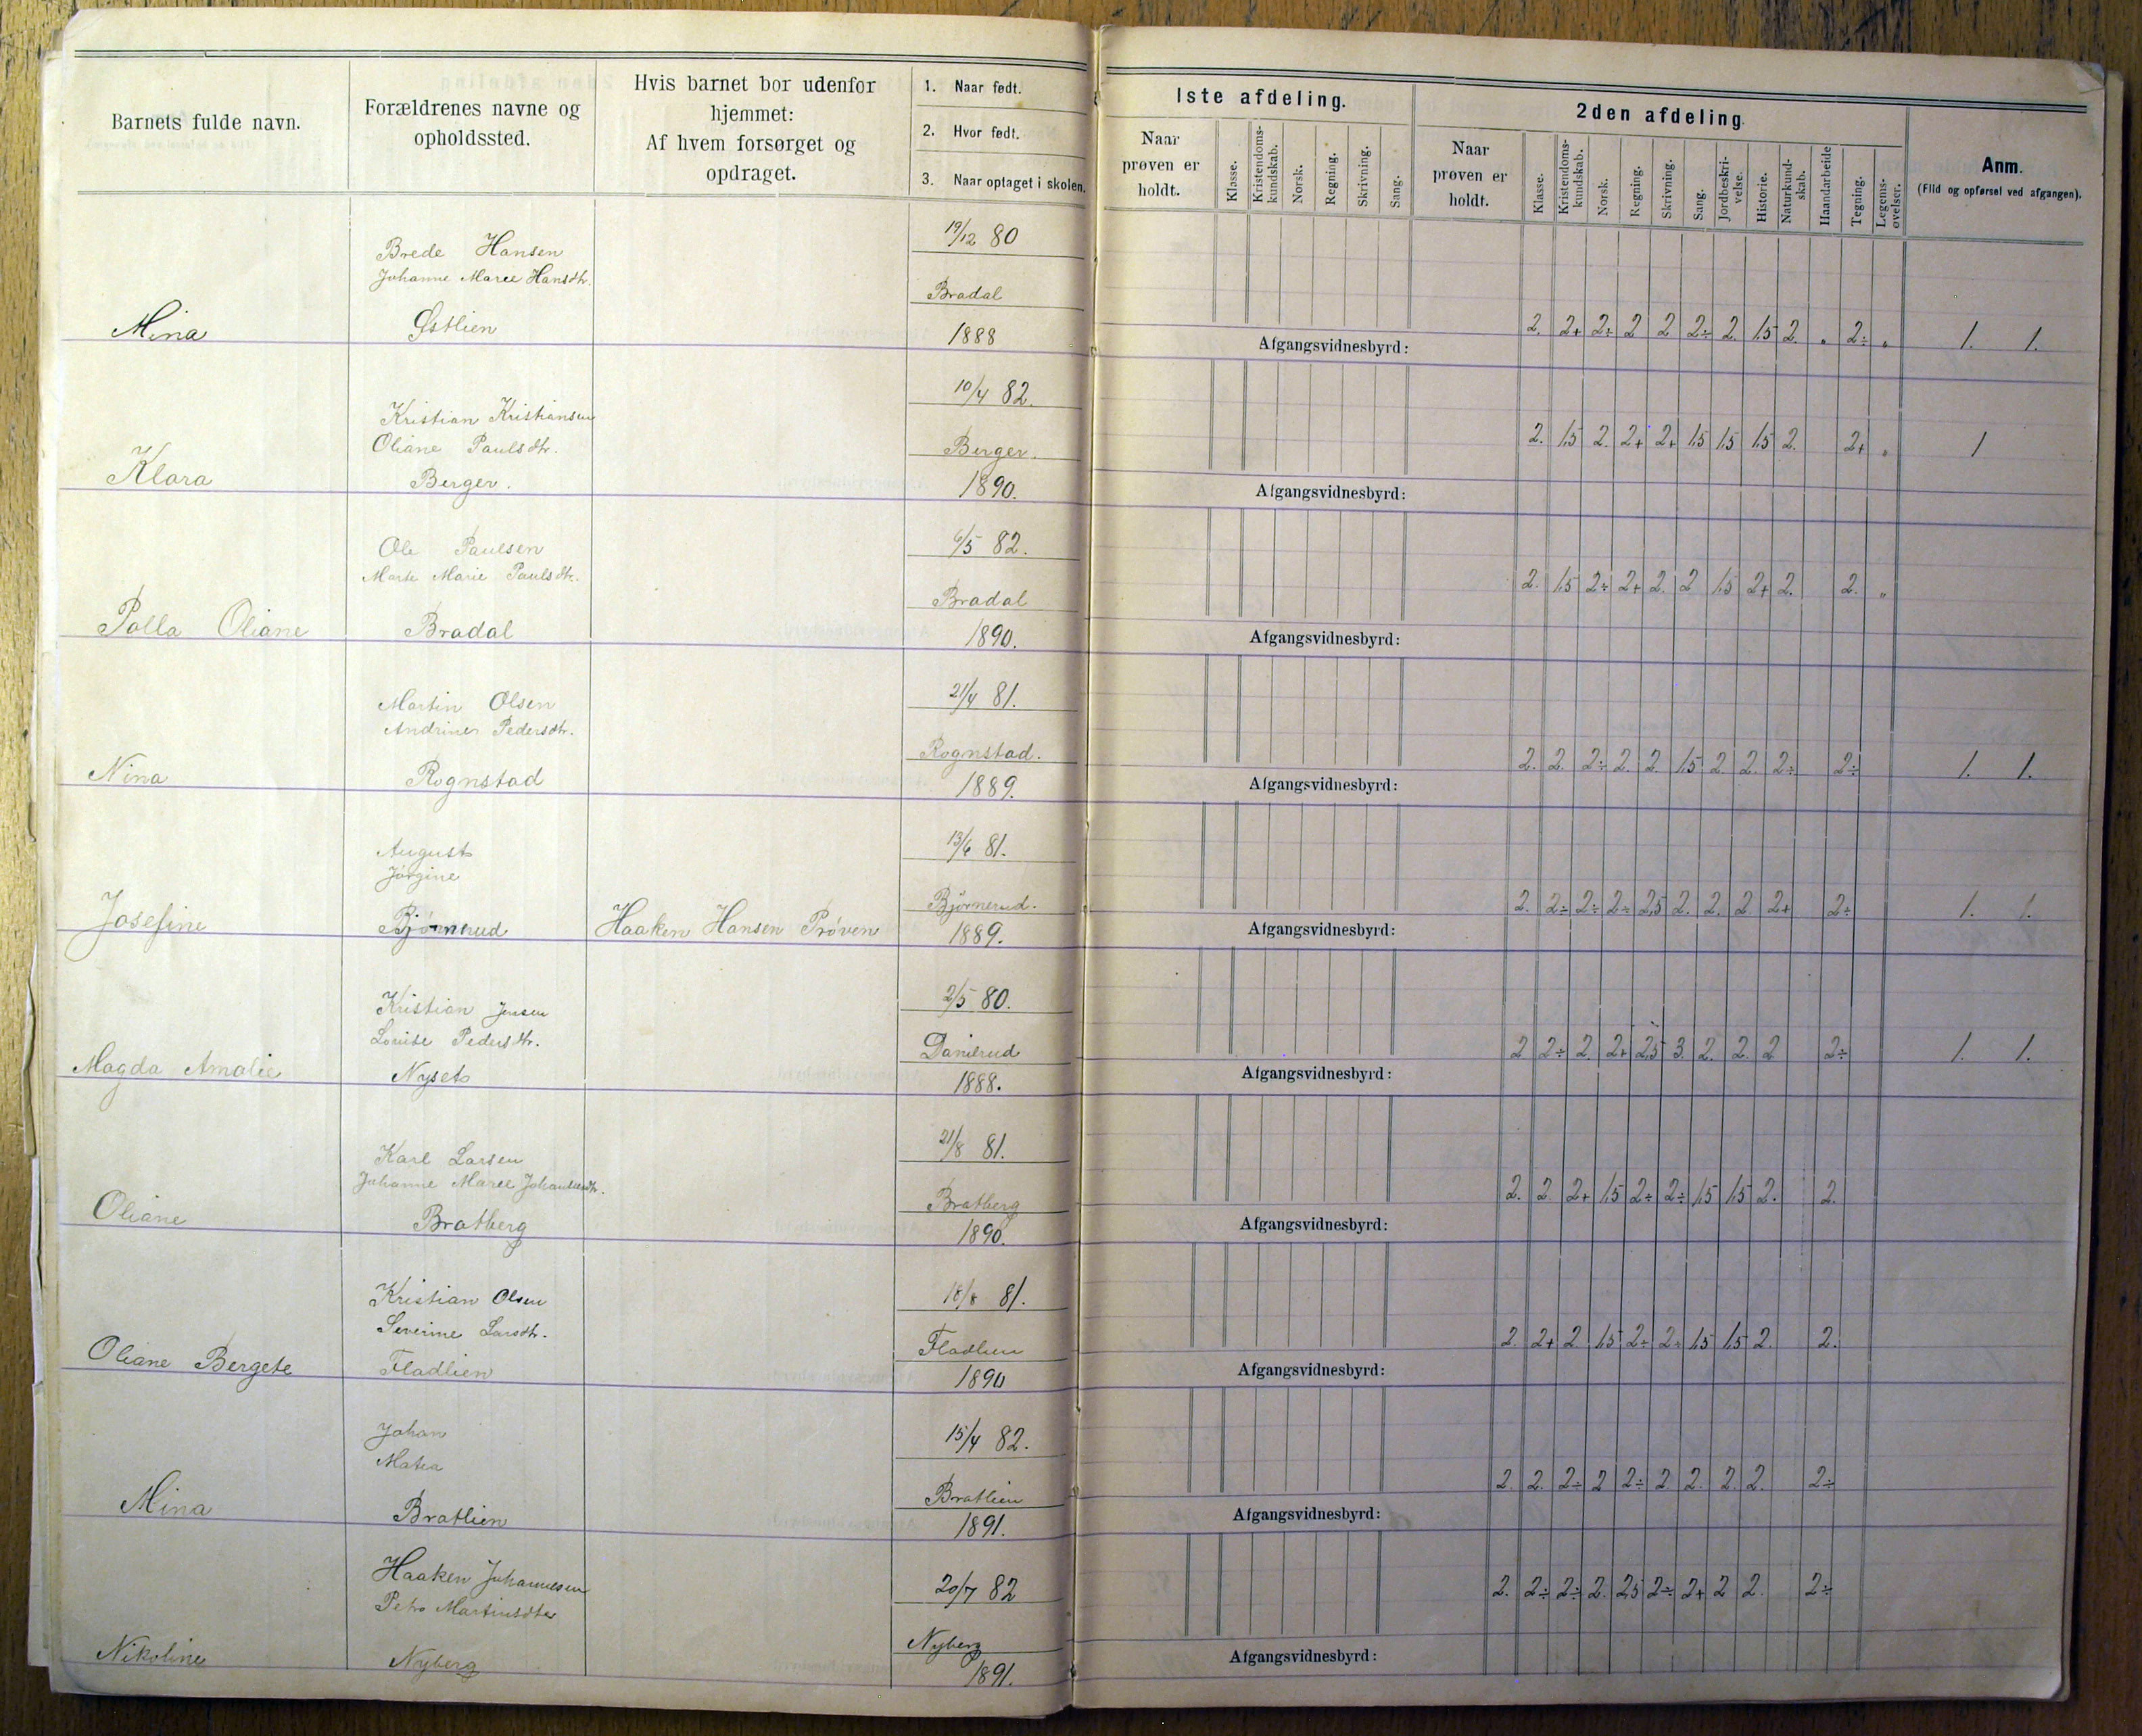 Vestre Toten kommunearkiv*, KVT/-/-/-: Protokoll for årsprøver og avgangsvitnesbyrd, Veståsen krets i Vestre Toten skolekommune, 1895-1926